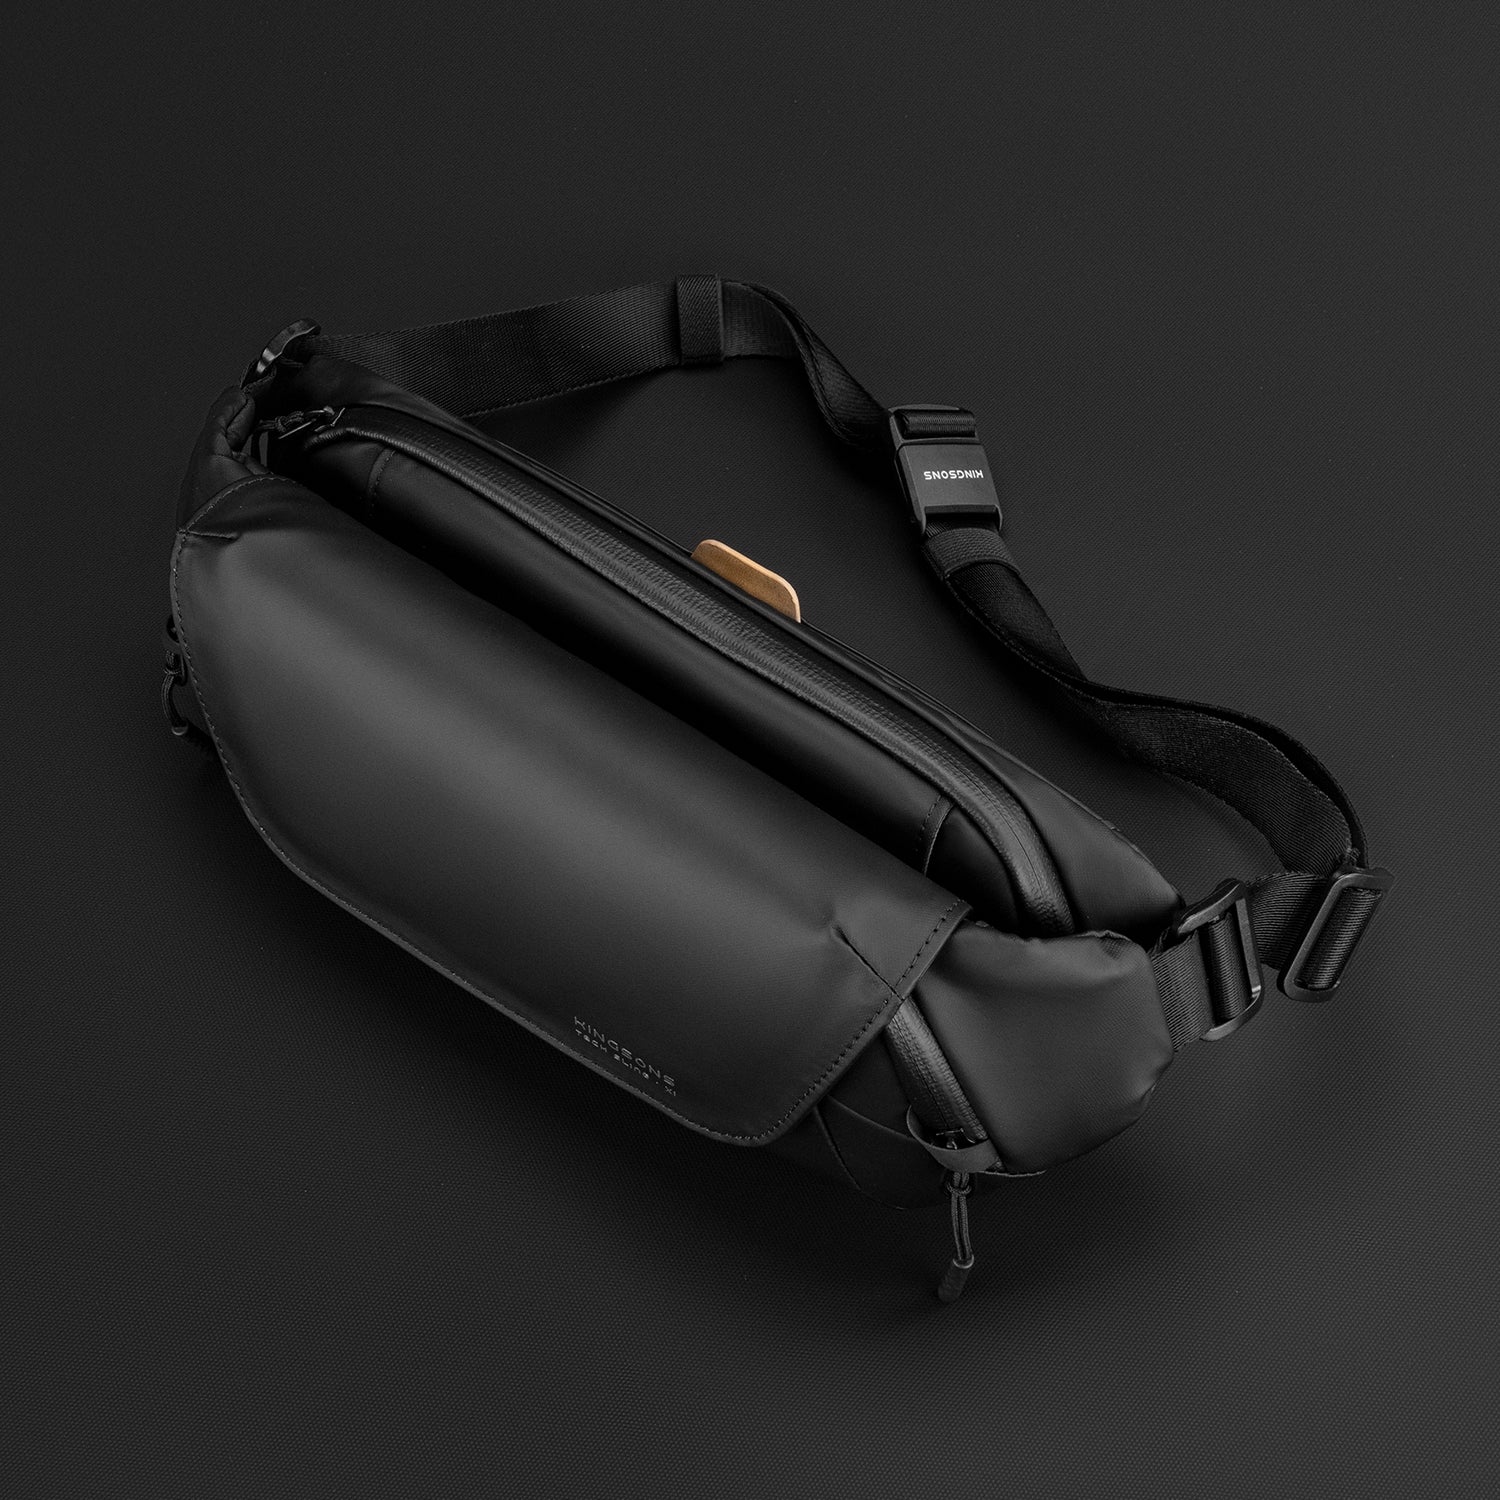 Kingsons Sling Bag Backpack Versatile Crossbody Shoulder Bag For Travel Hiking Day pack